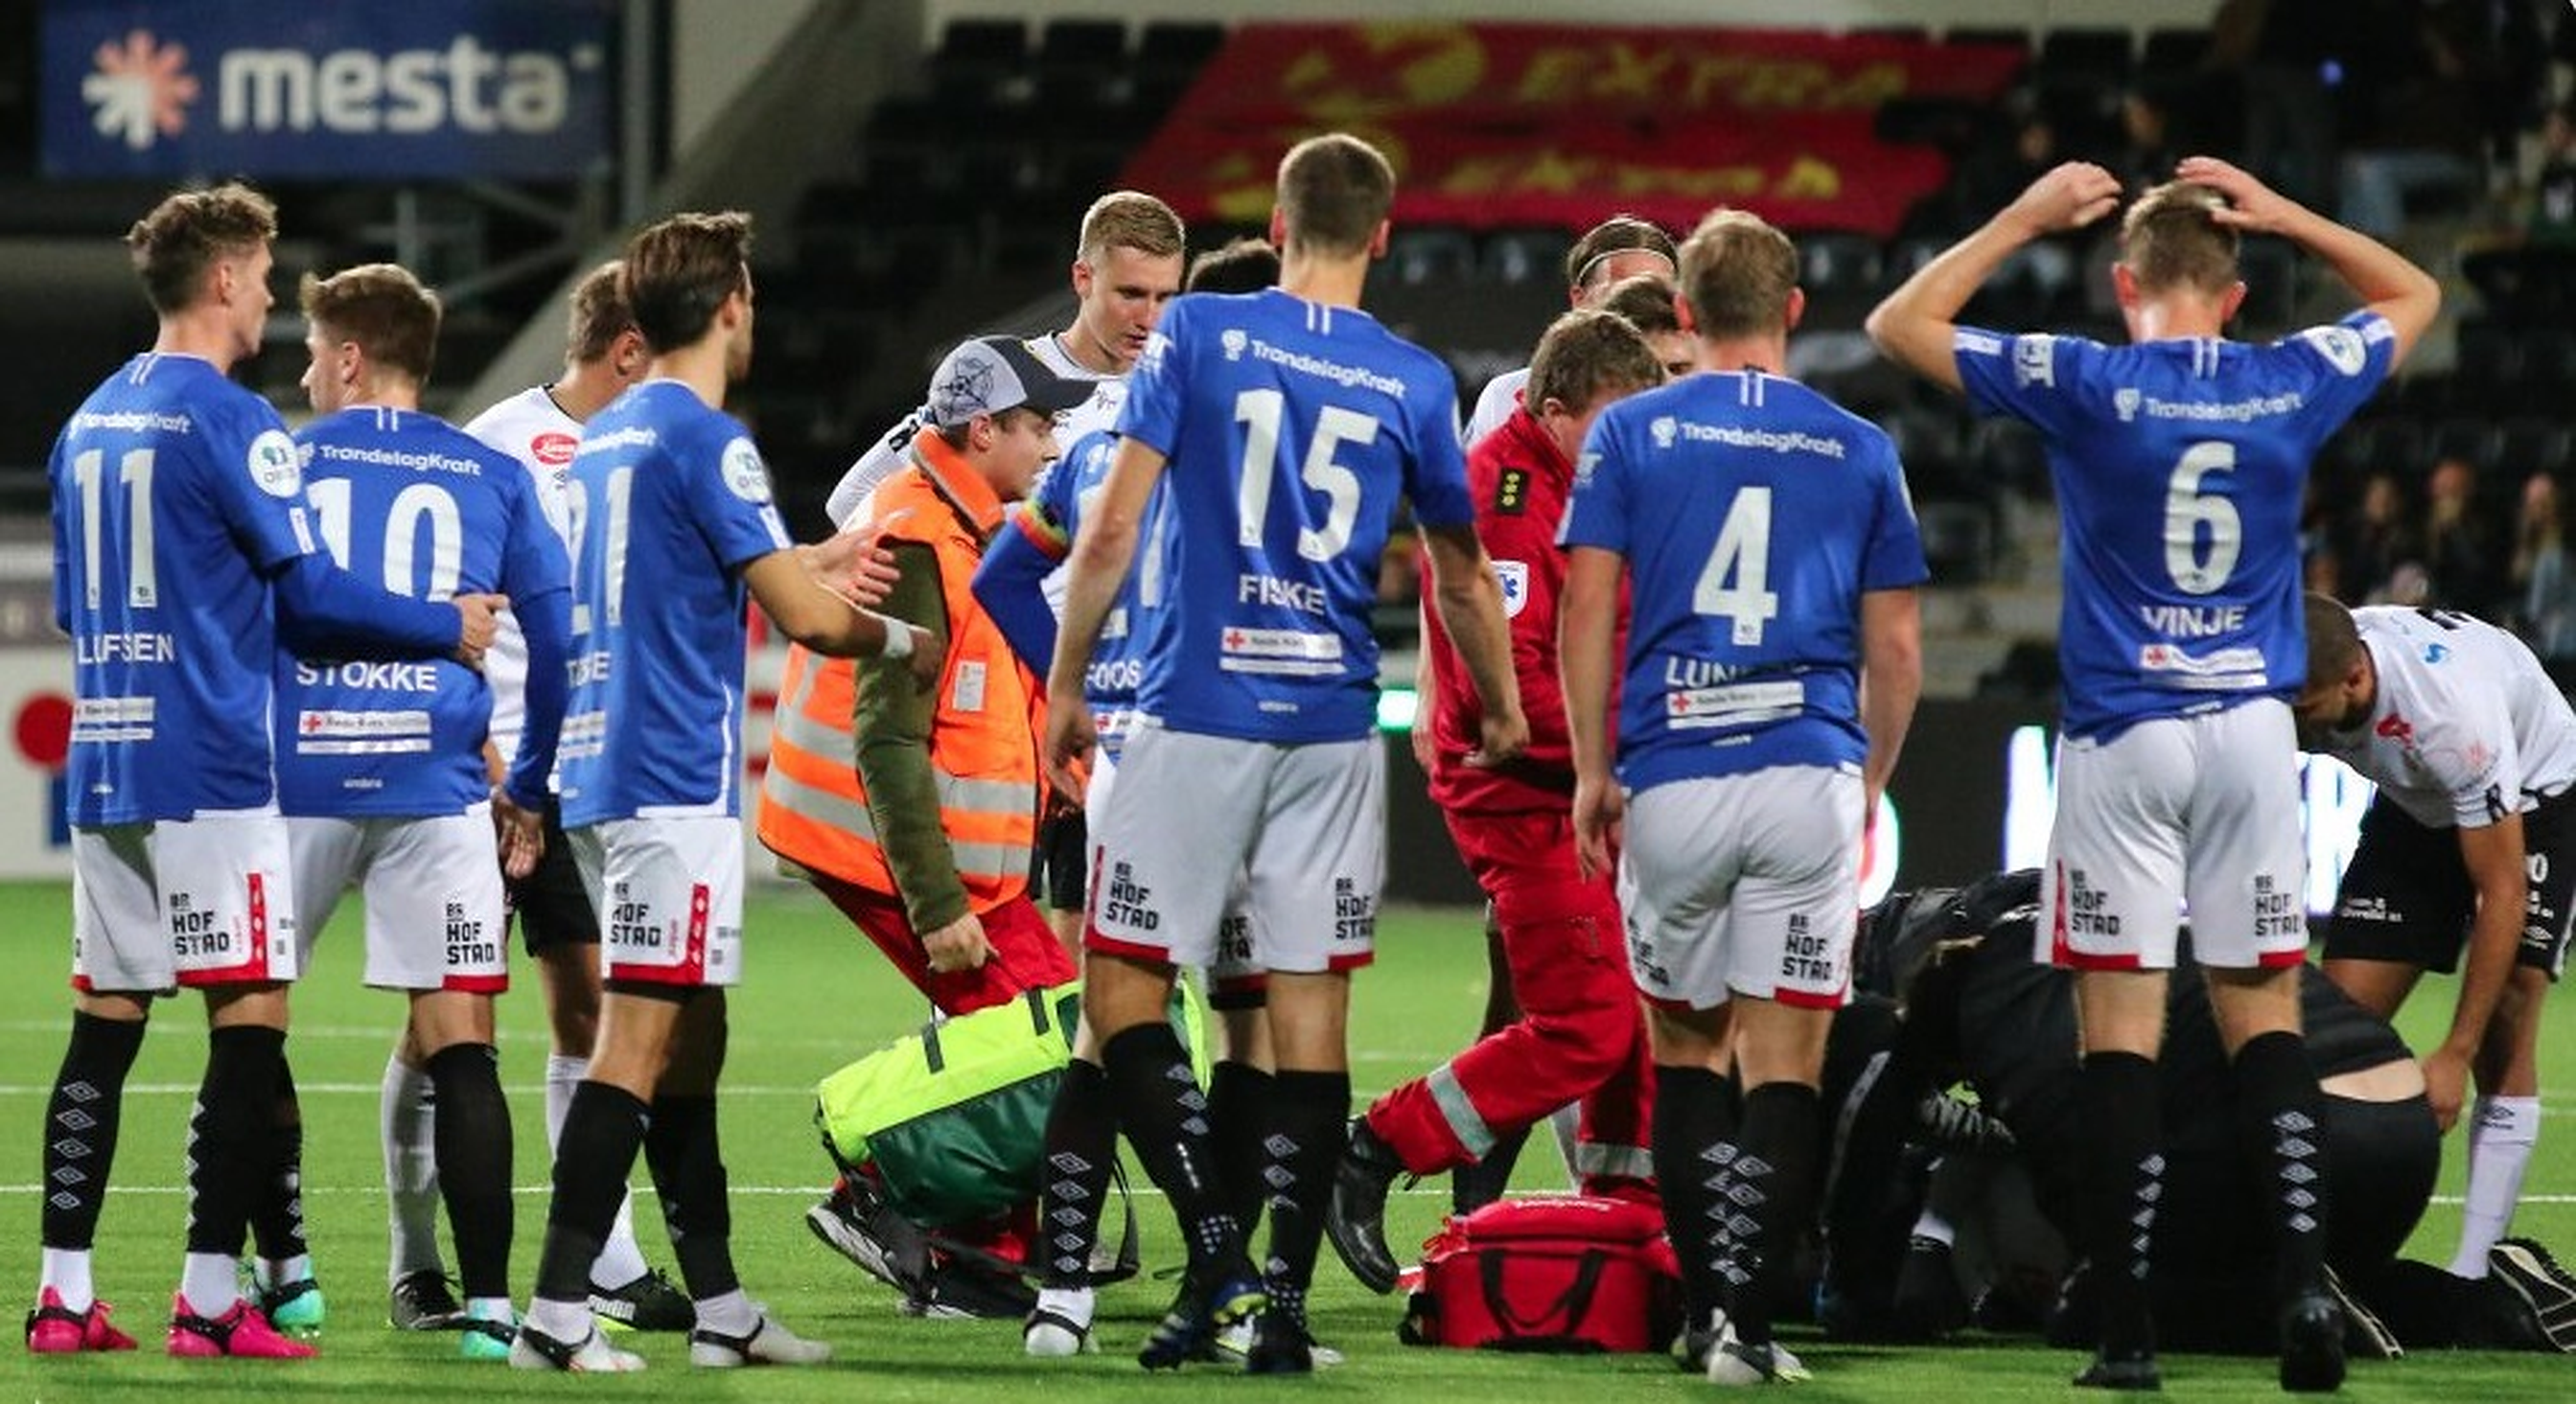 Fotbalistul Emil Palsson a suferit un infarct în timpul unui meci din campionatul norvegian